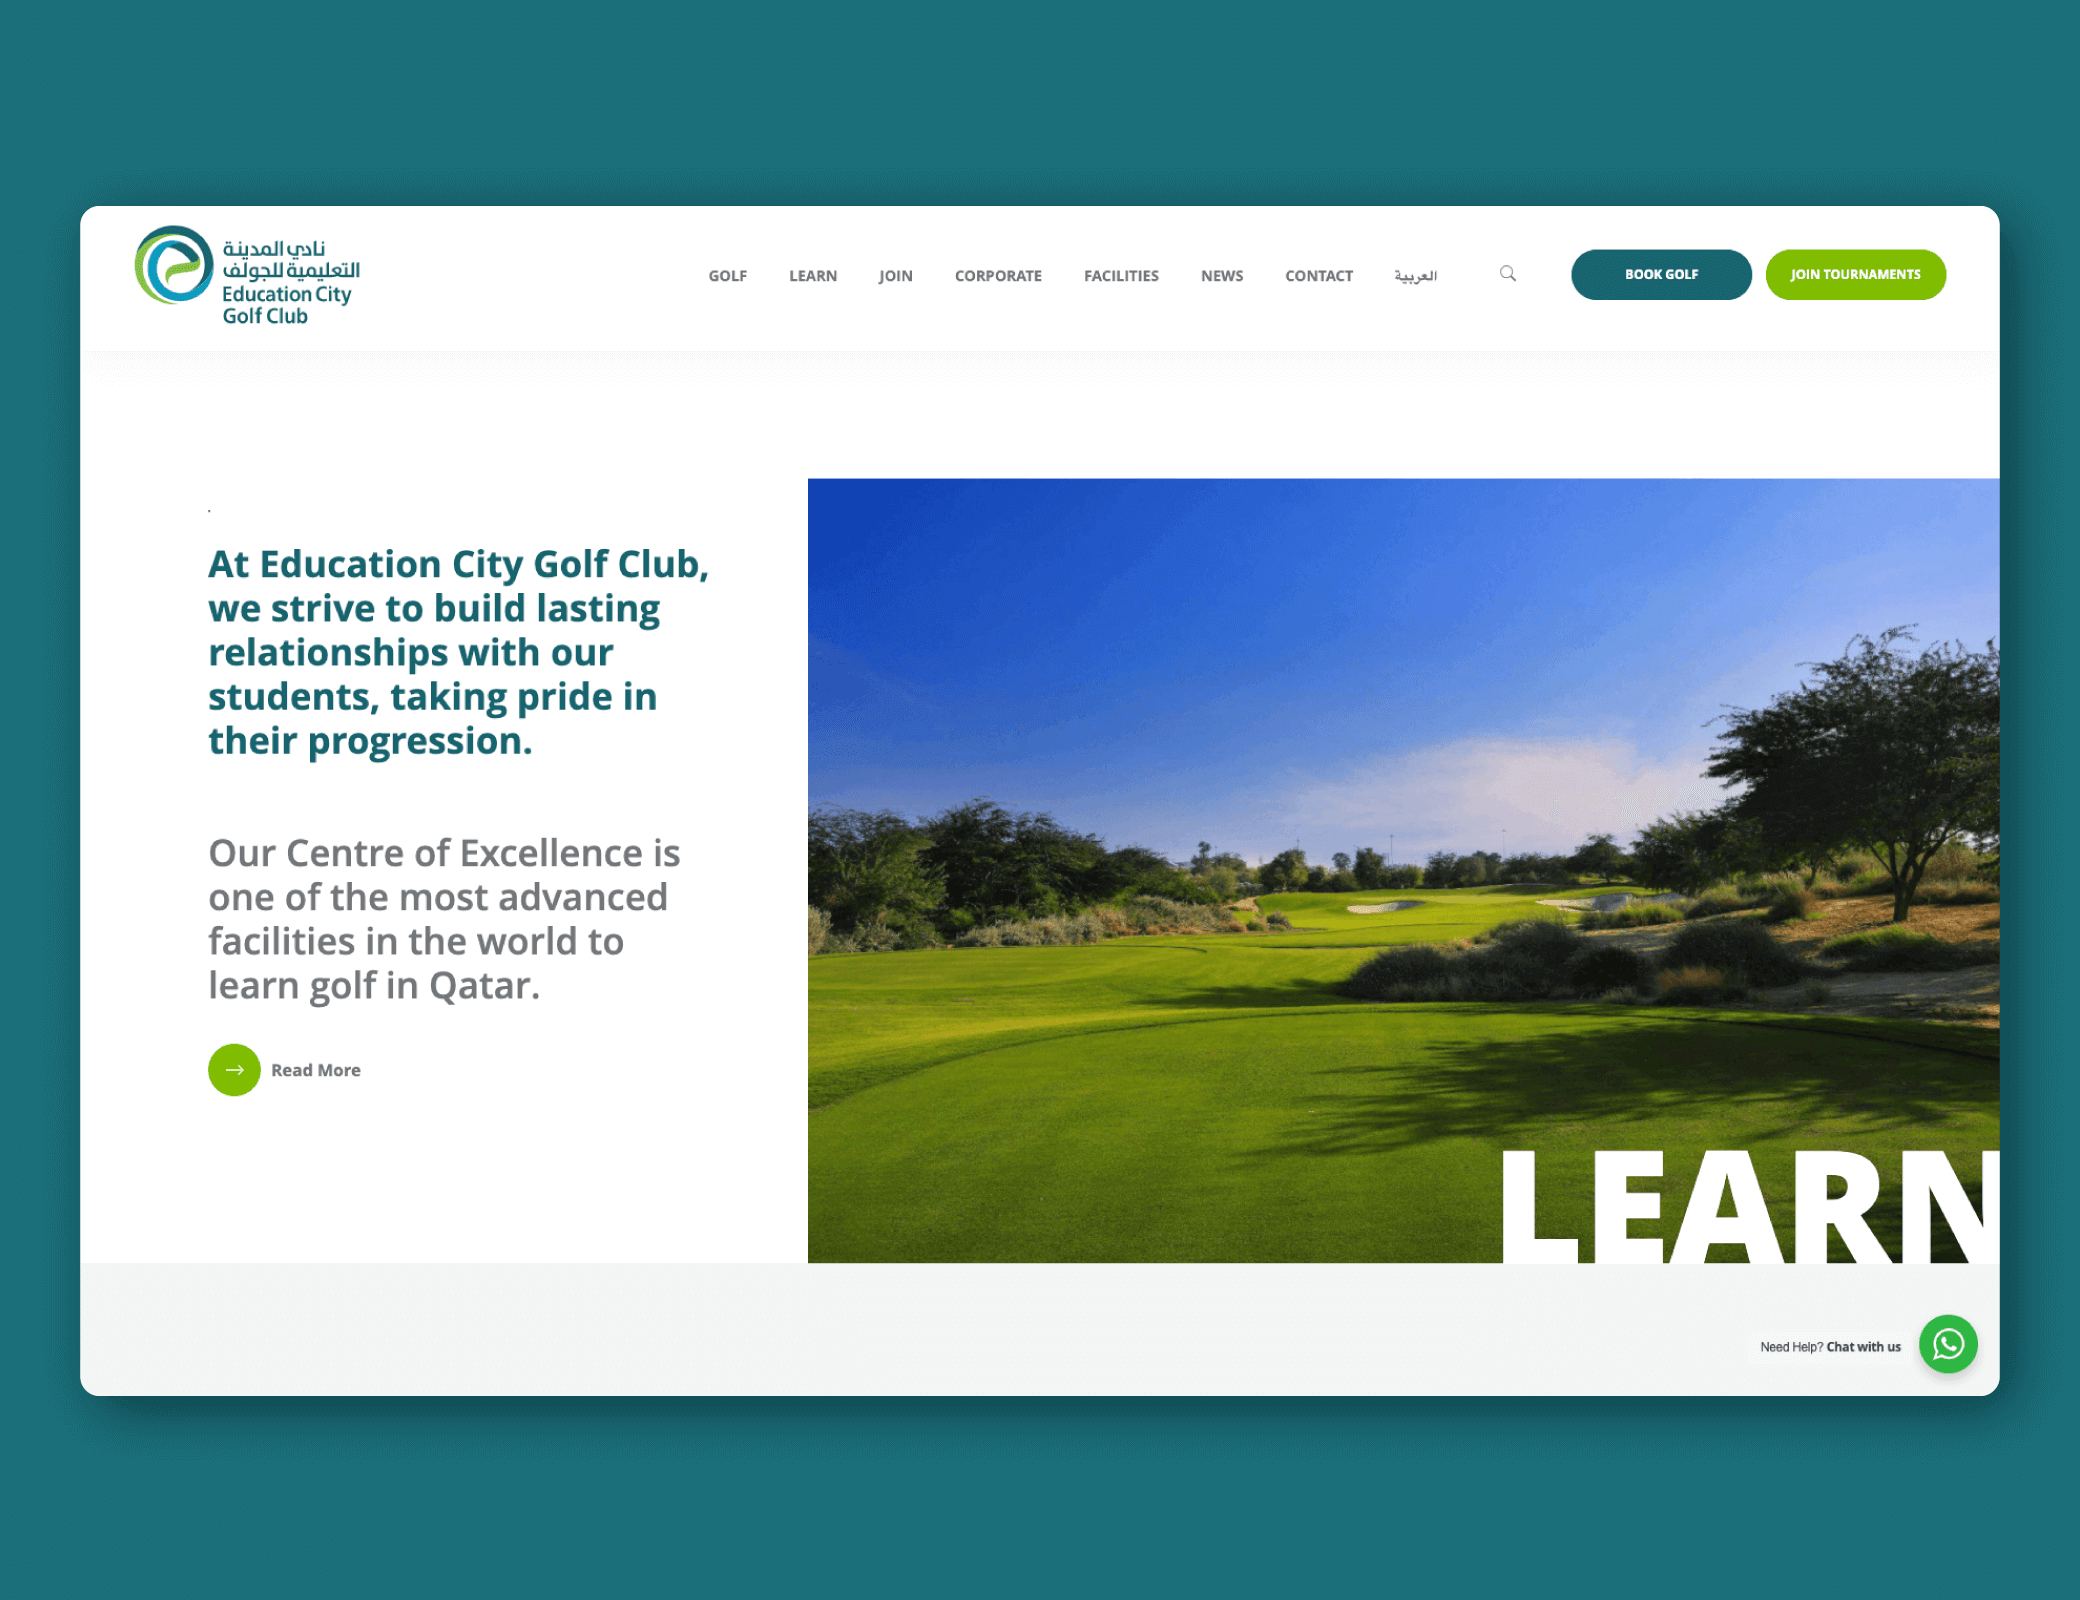 Education City Golf Club